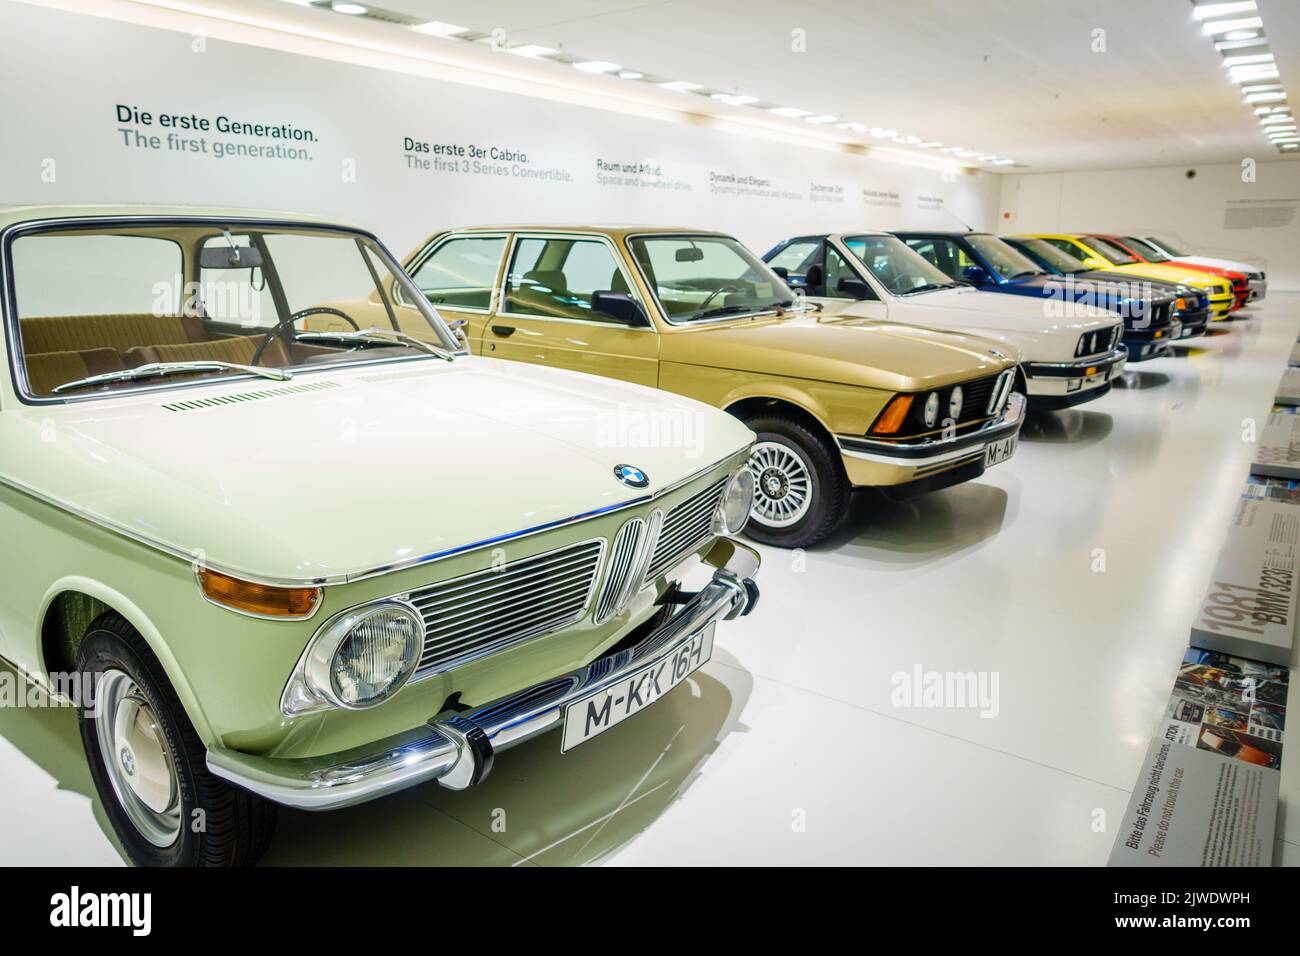 Munich, Allemagne, 29 septembre 2015 : voitures BMW série 3 au musée BMW de Munich, Allemagne Banque D'Images